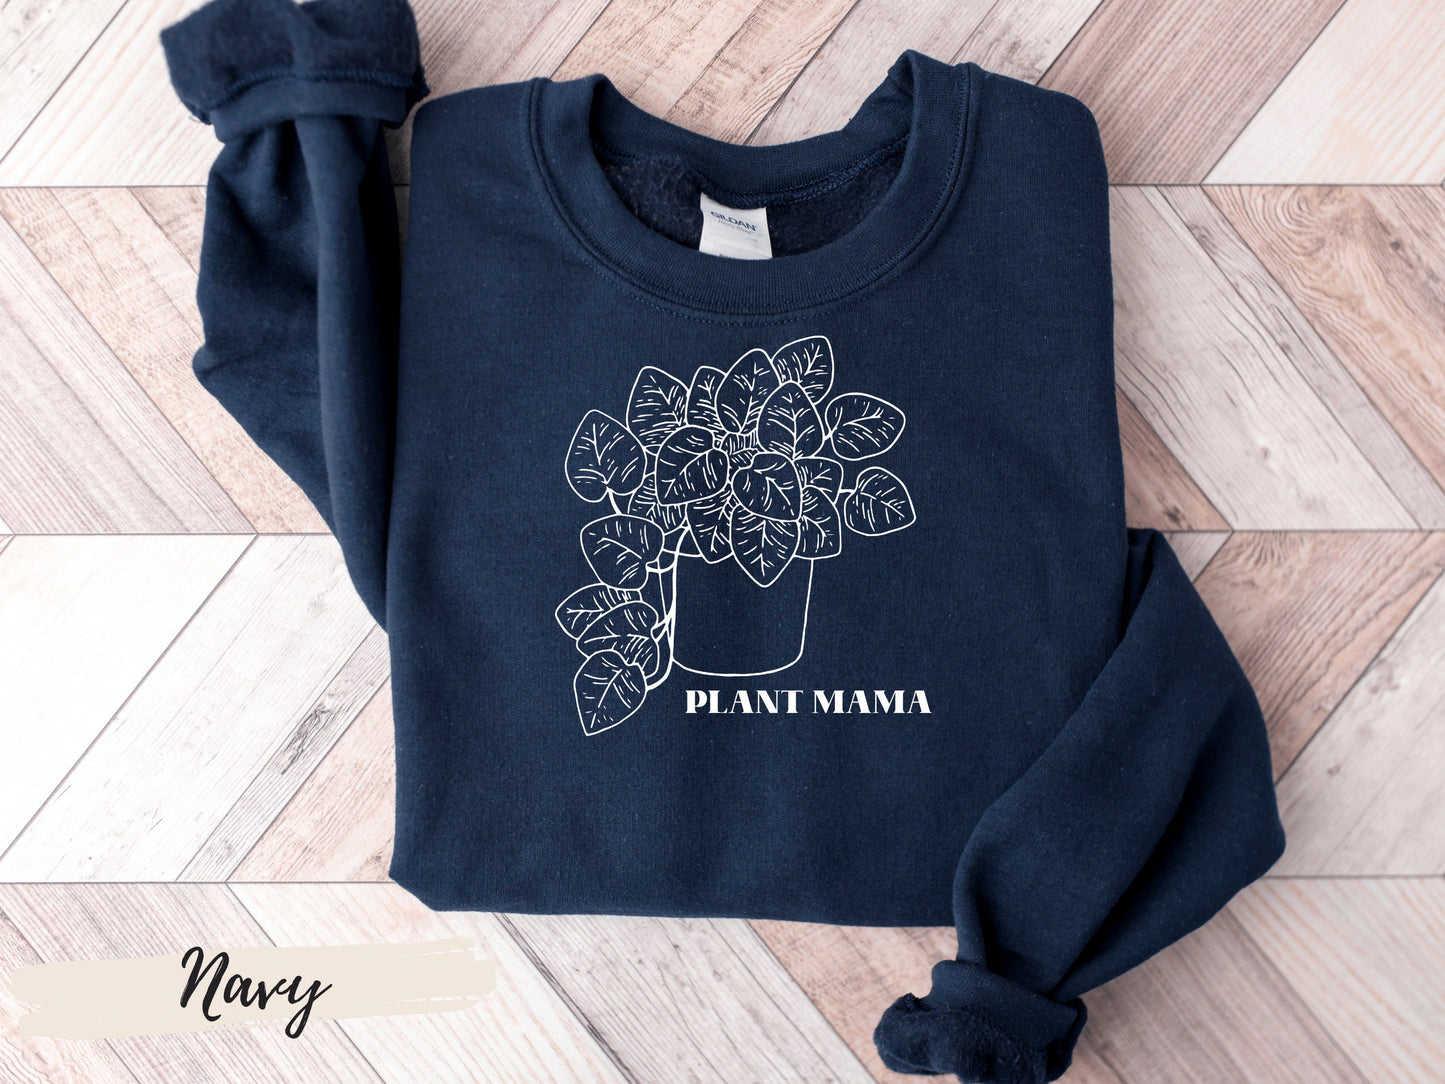 Plant Mama Pothos Shirt , Plant Mama Shirt, Plant Lover Gift, Plant Pothos Shirt, Plant Shirt, Funny Plant Shirt, Crazy Plant Lady Shirt,